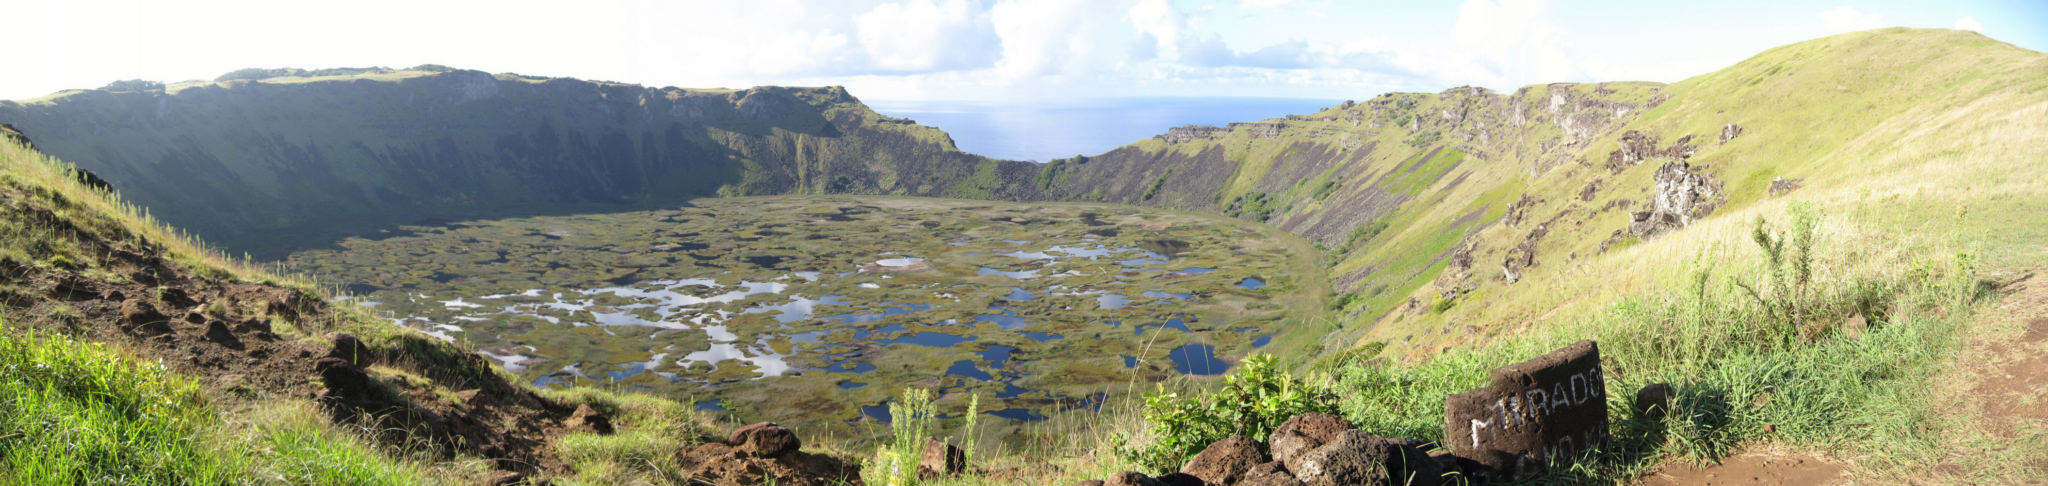 La cratère Rano Kau à Rapa Nui